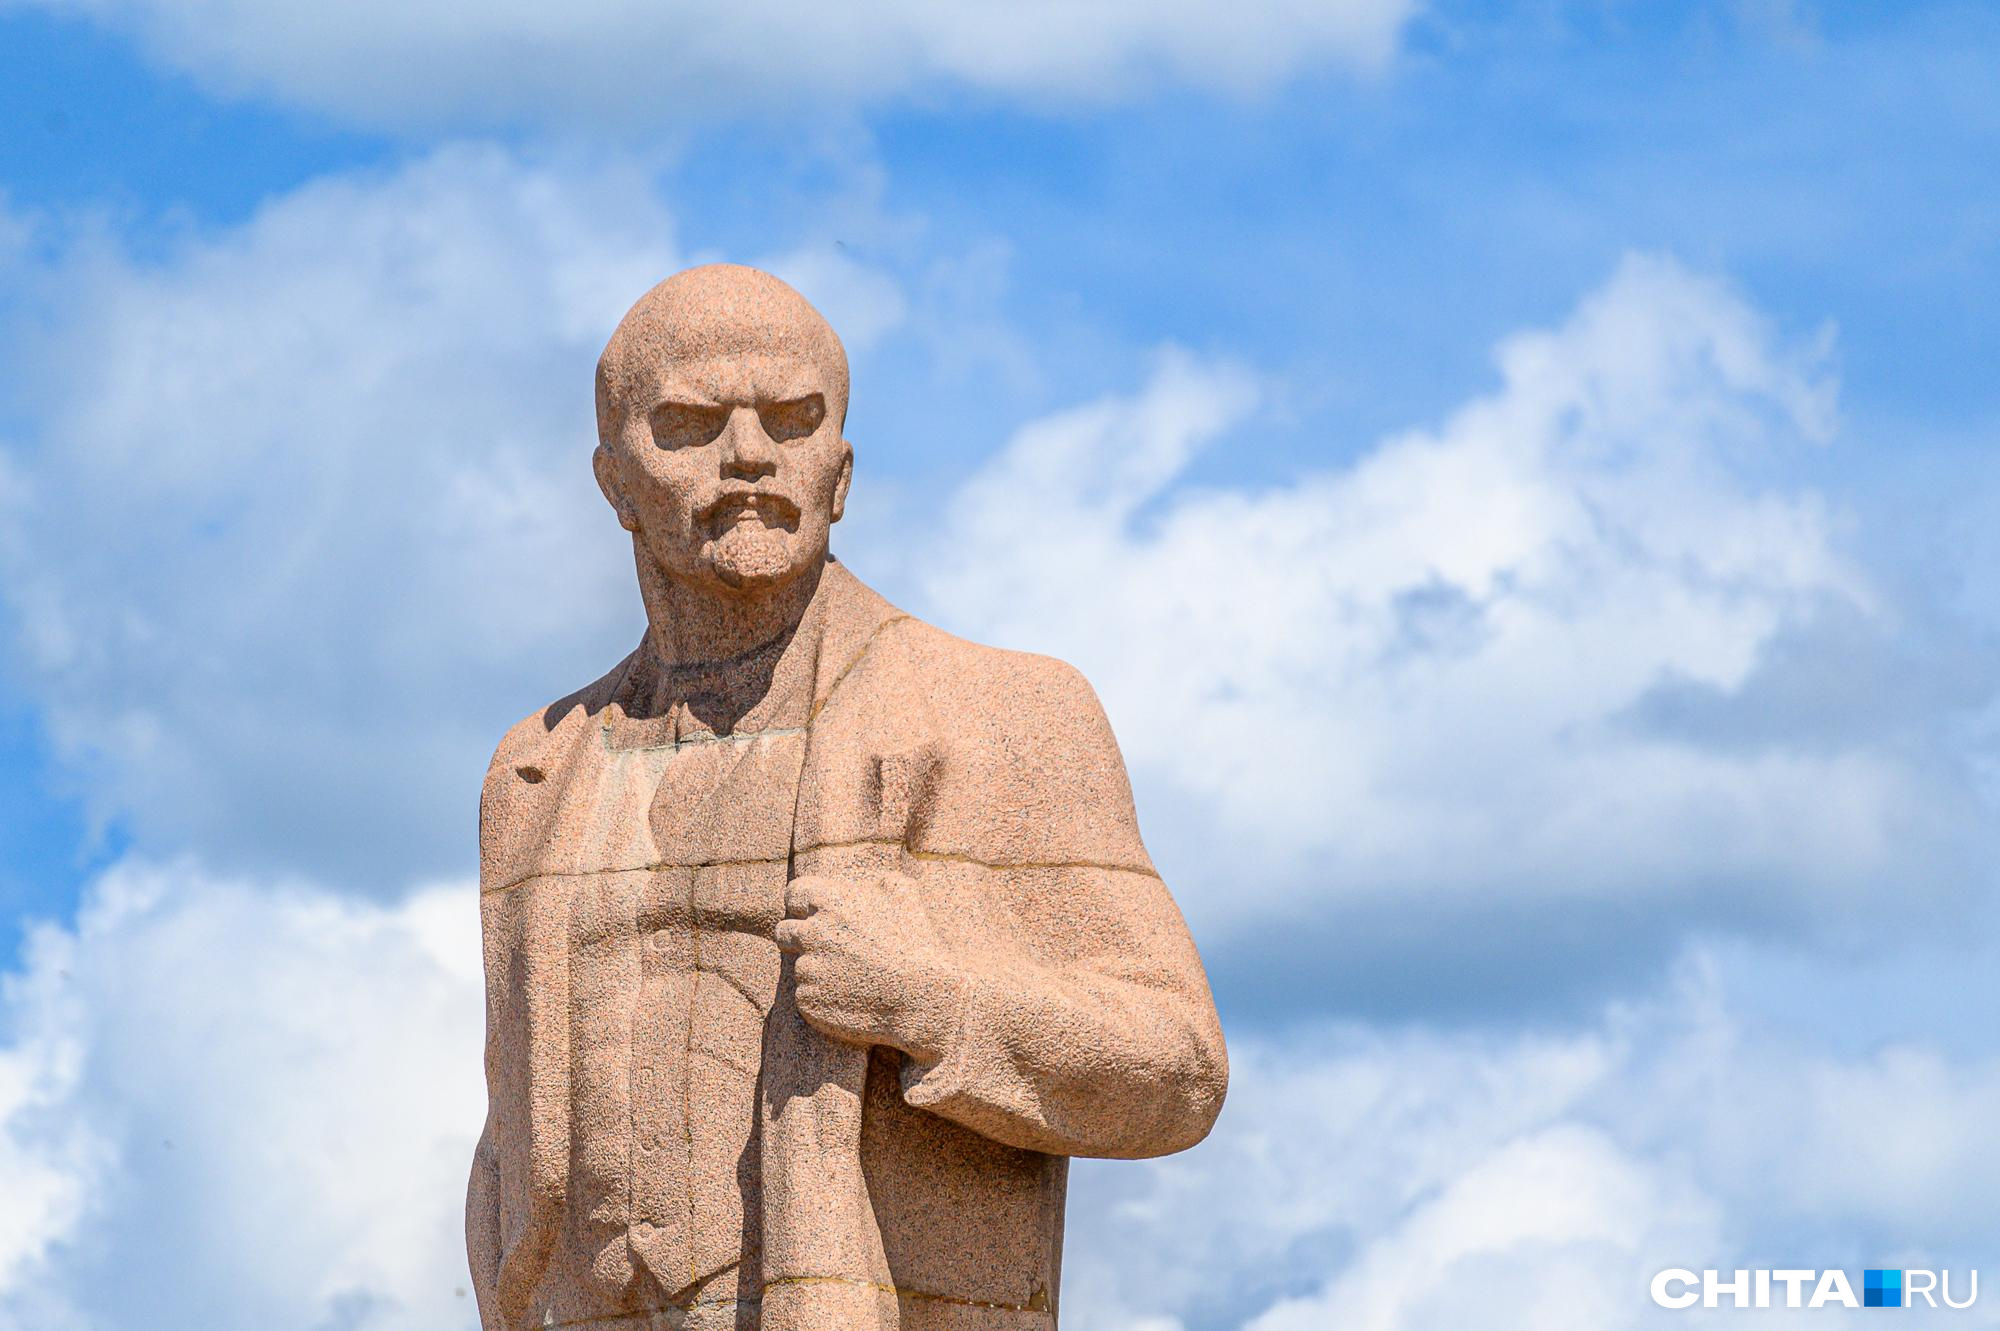 Запрещенный изначально митинг в честь 100-летия Ленина все-таки пройдет в Чите